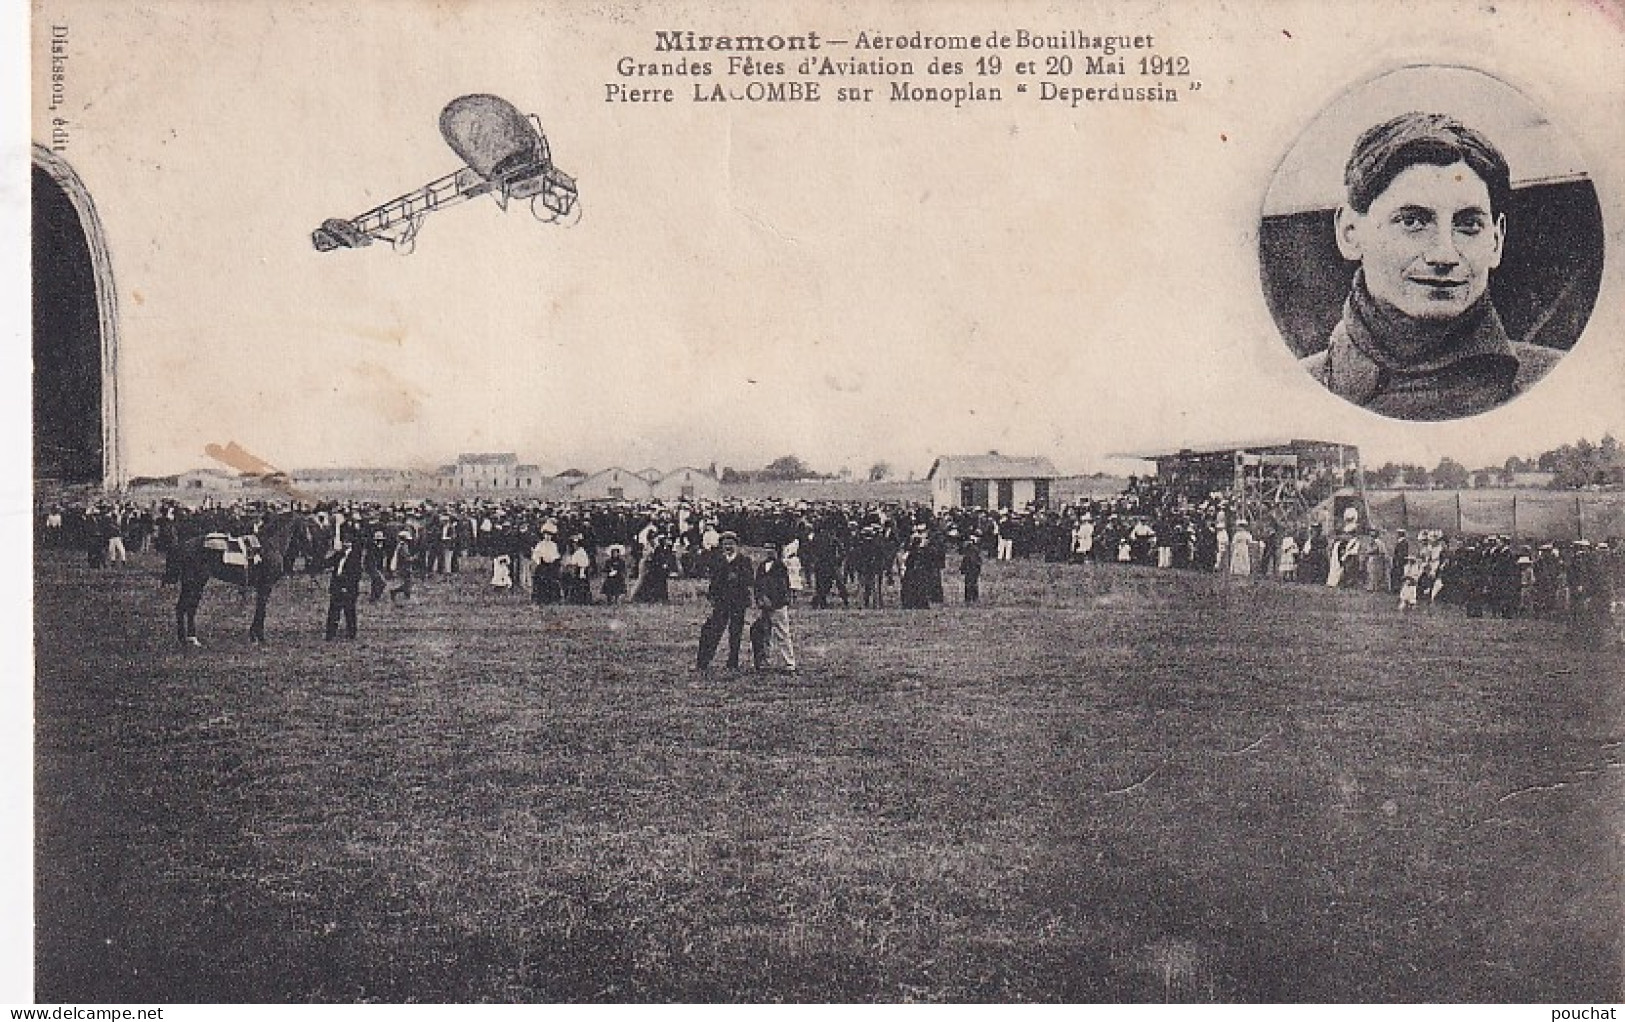 XXX Nw-(47) MIRAMONT - AERODROME DE BOUILHAGUET - FETES D'AVIATION MAI 1912 - PIERRE LACOMBE SUR MONOPLAN DEPERDUSSIN - Flieger